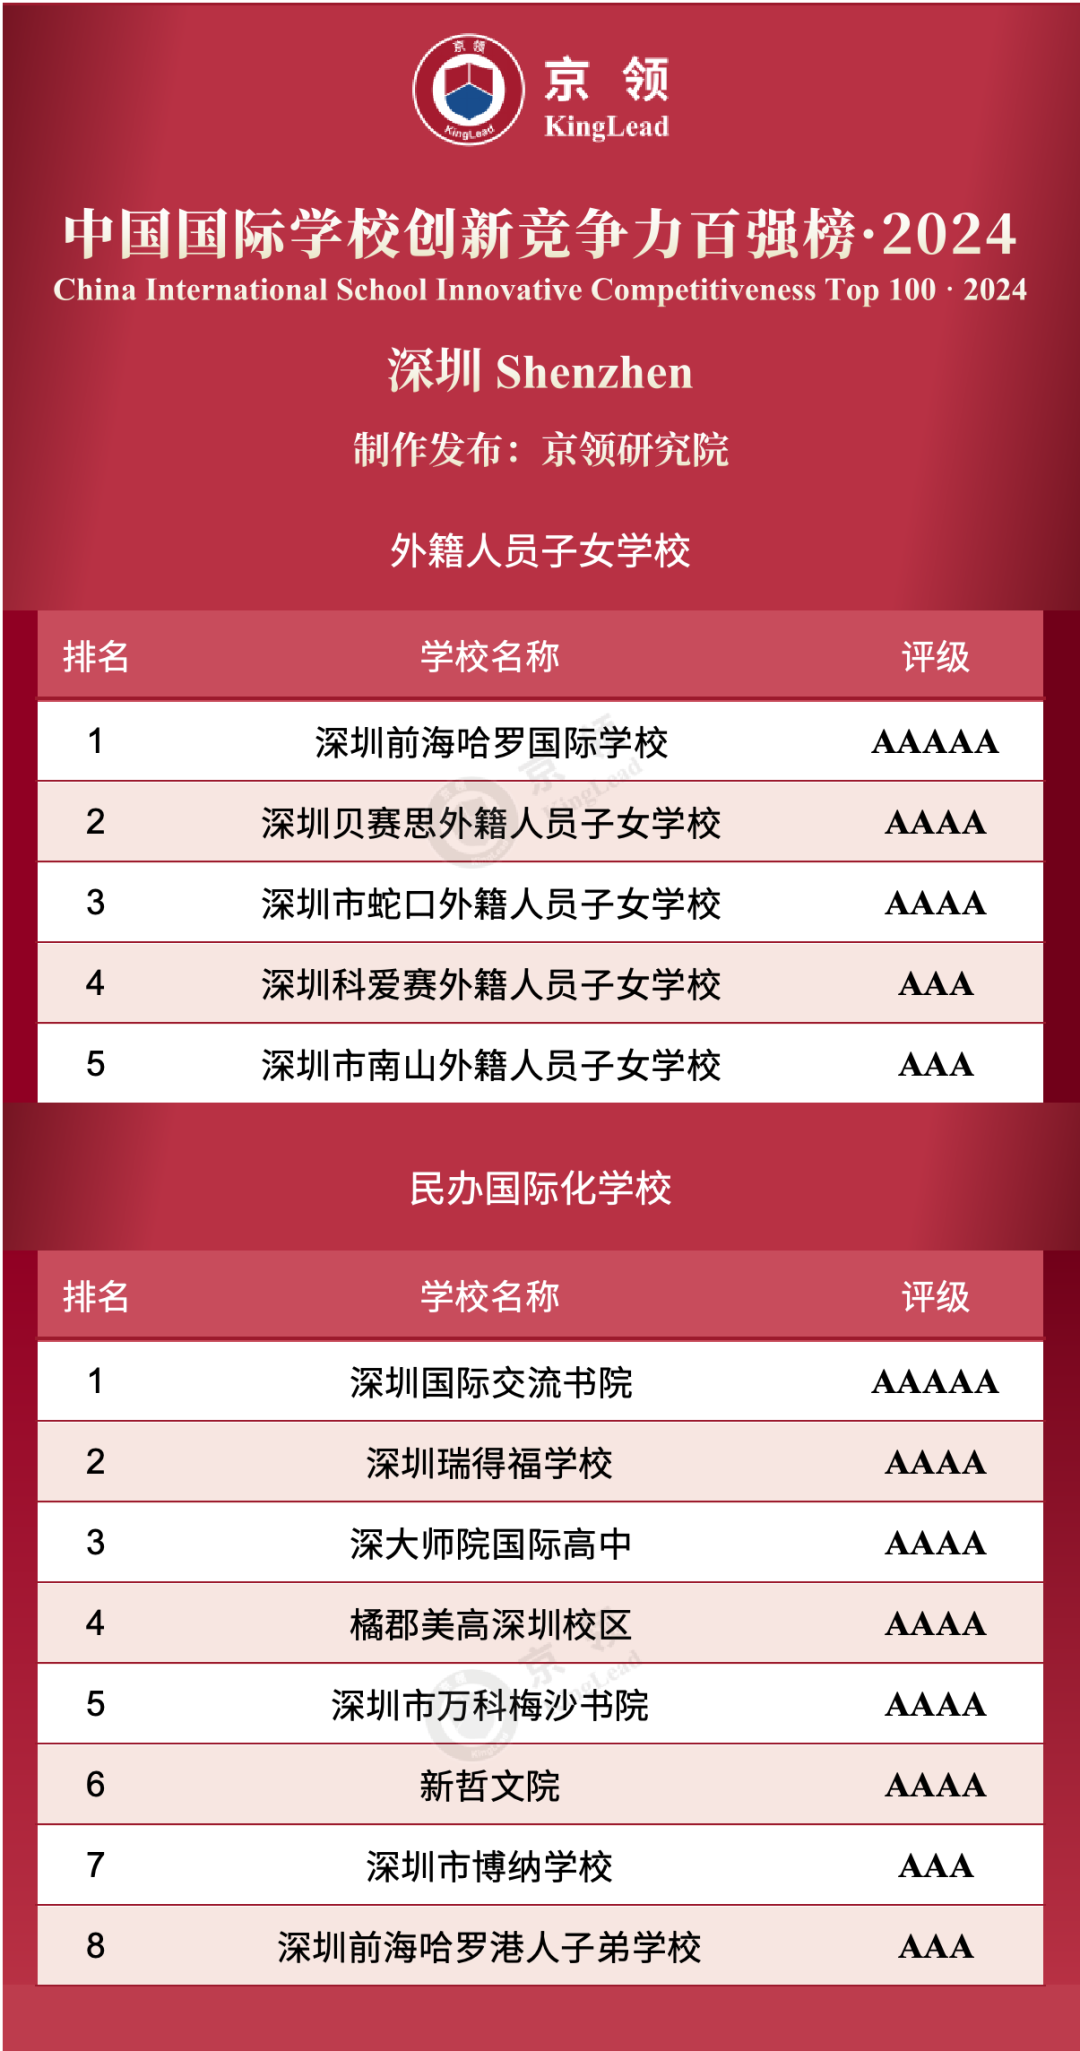 深圳共13所国际学校上榜创新榜，其中外籍人员子女学校上榜5所，民办国际化学校上榜8所。